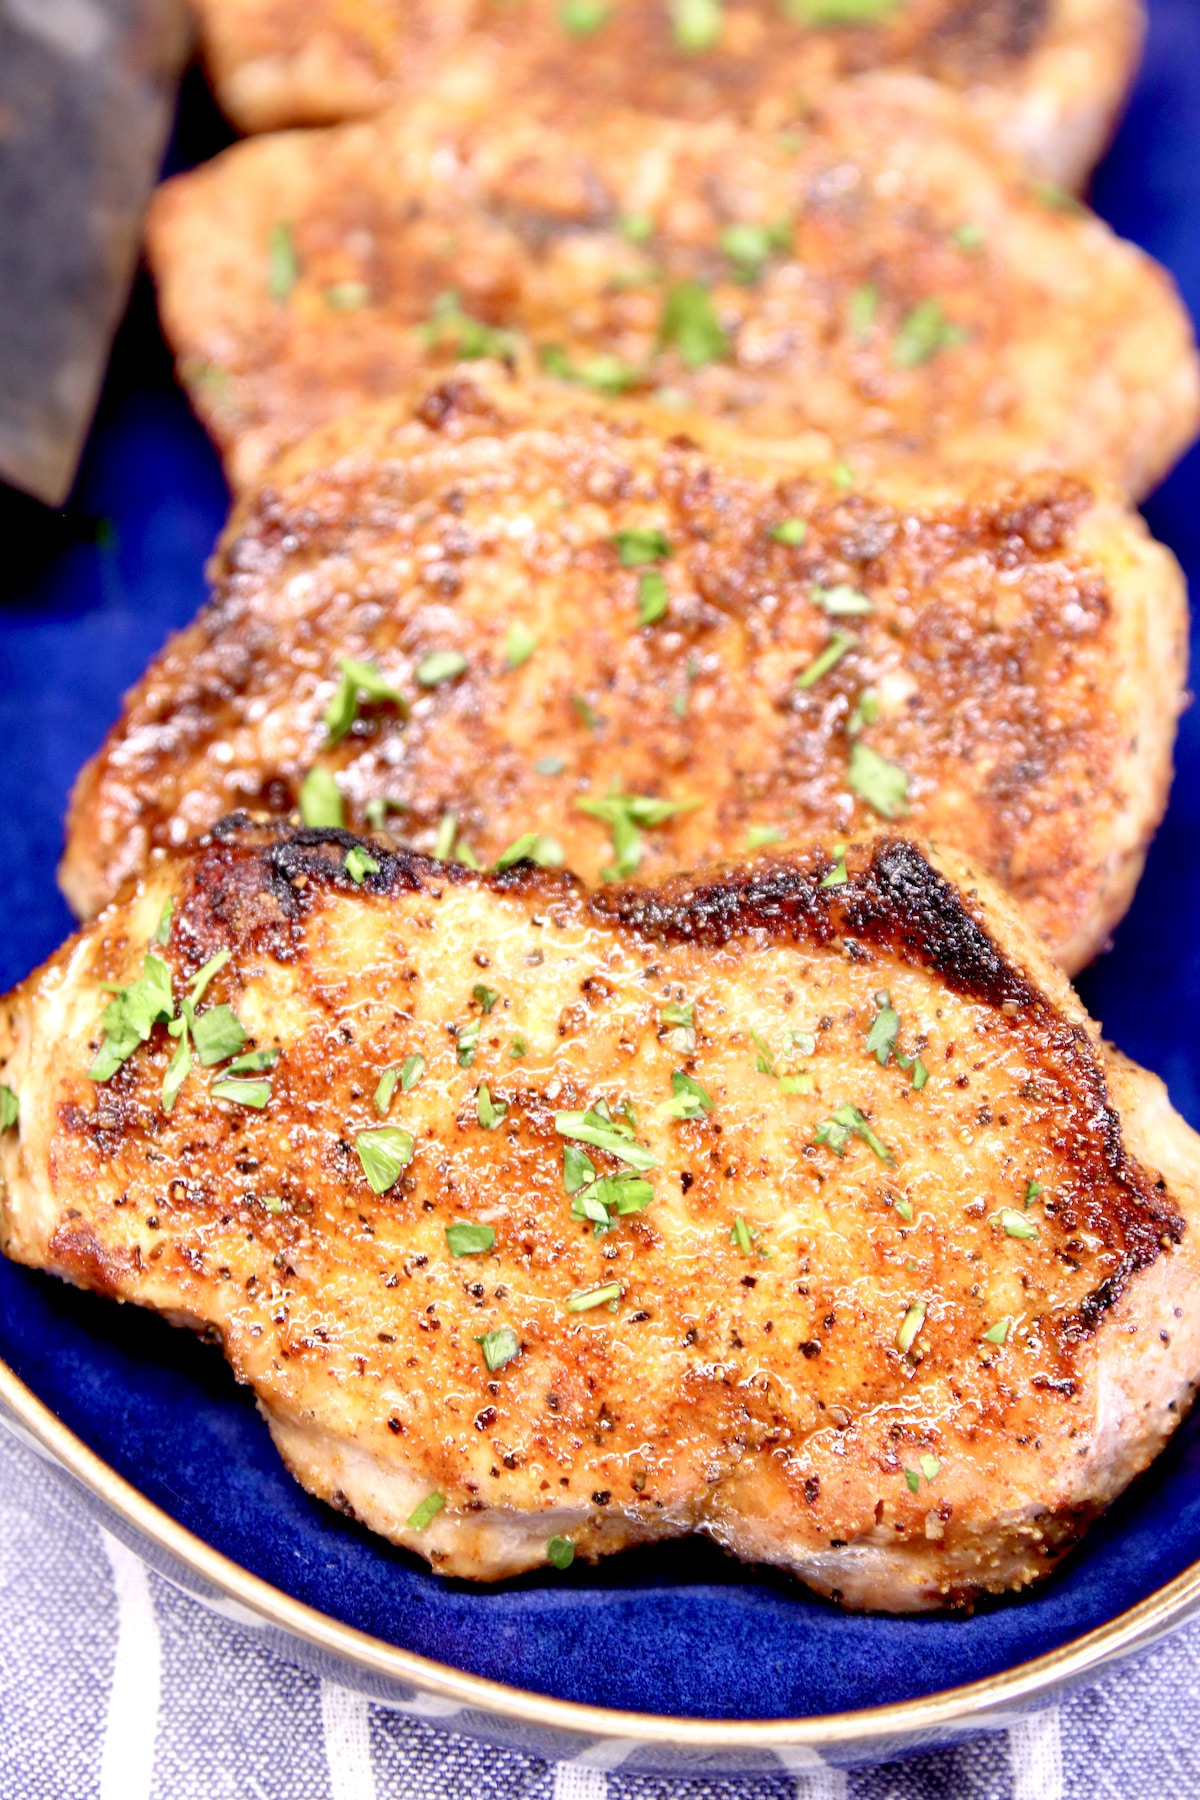 Grilled pork chops on a blue platter.